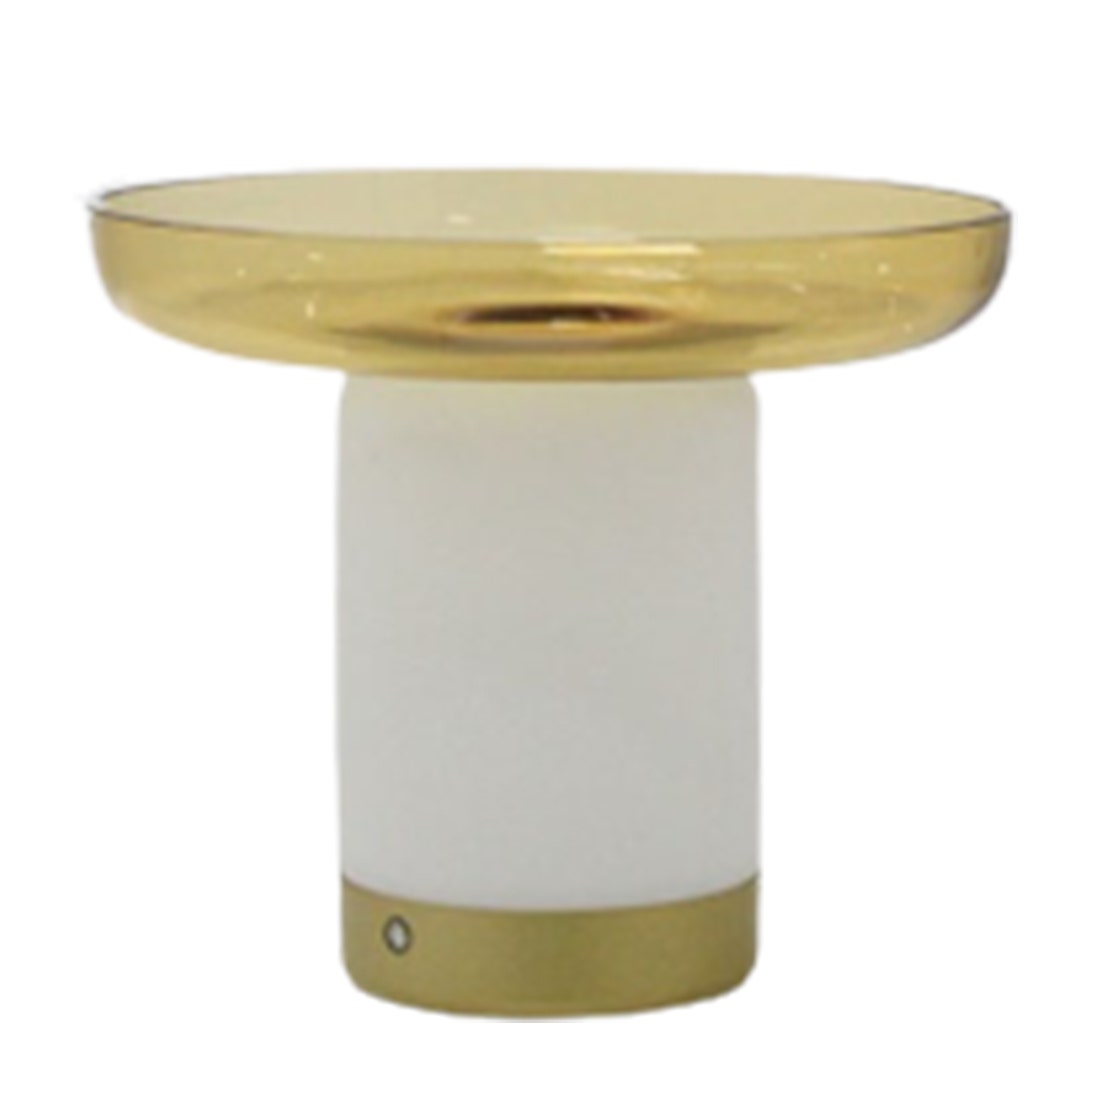 โคมไฟตั้งโต๊ะ รุ่น #MT21953-1-260 โลหะ/แก้วสีทอง/ขาว